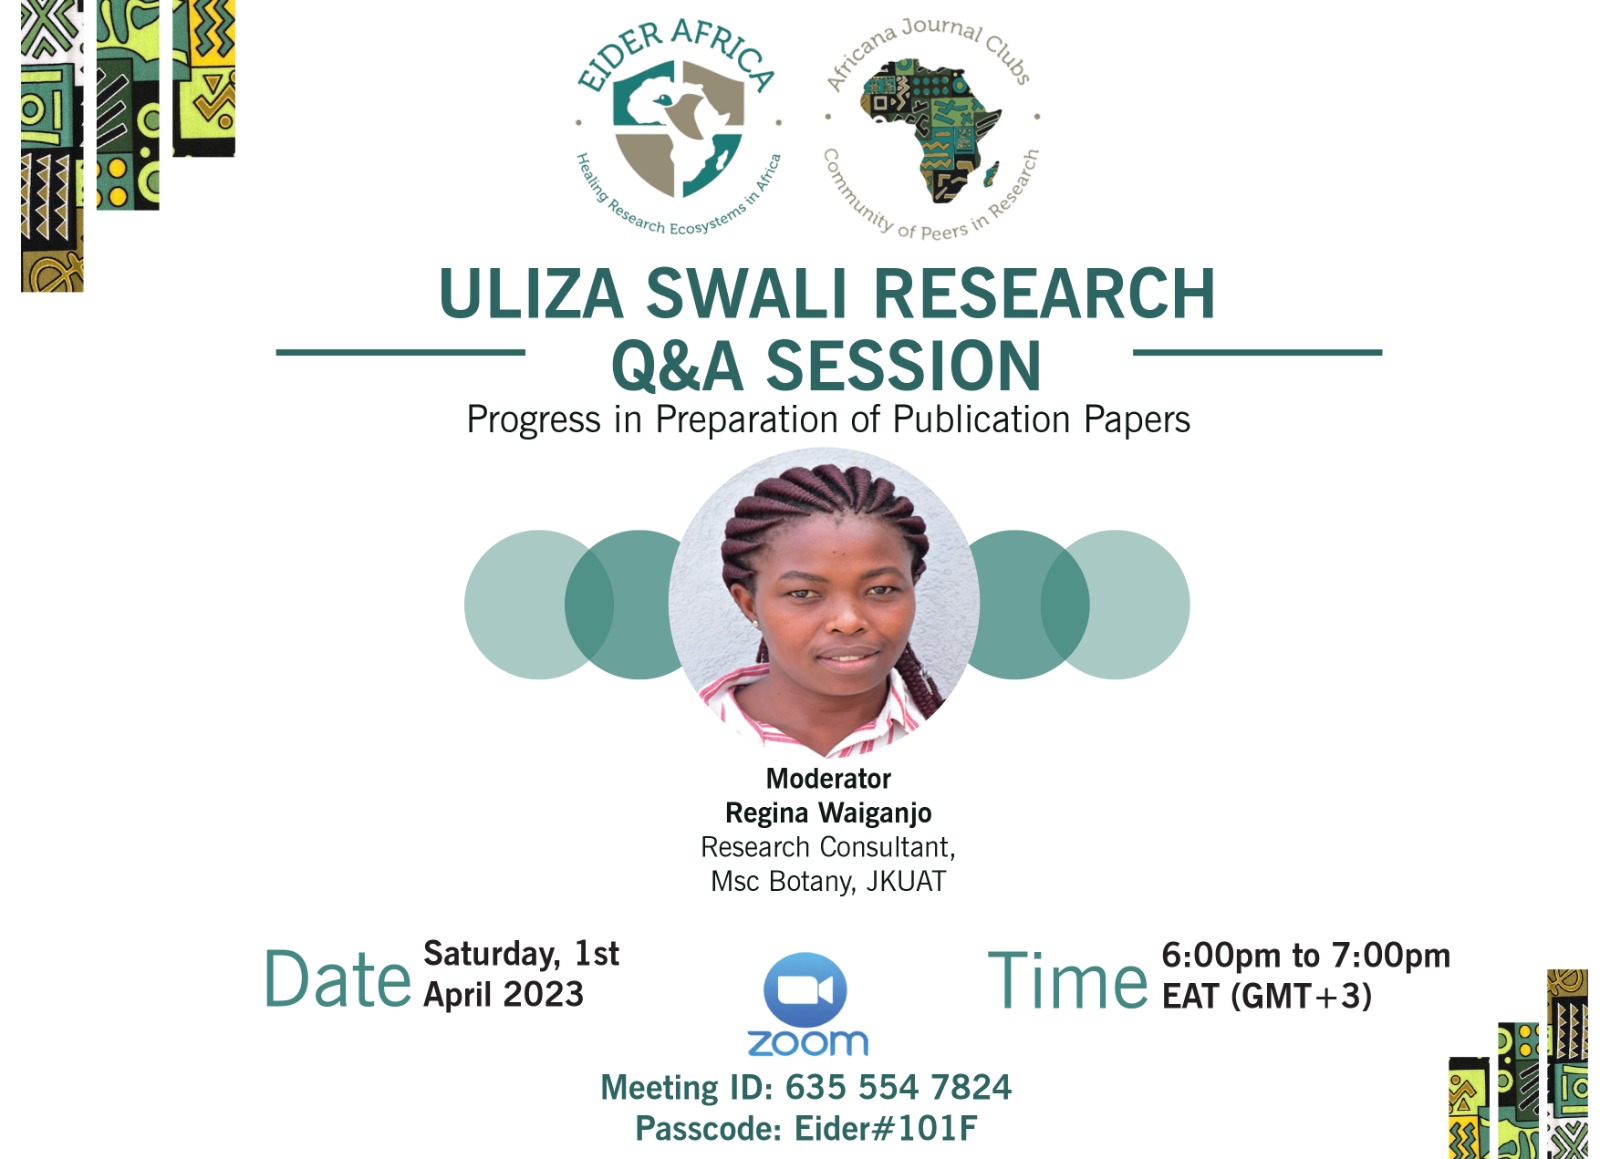 Uliza Swali Research QnA Session